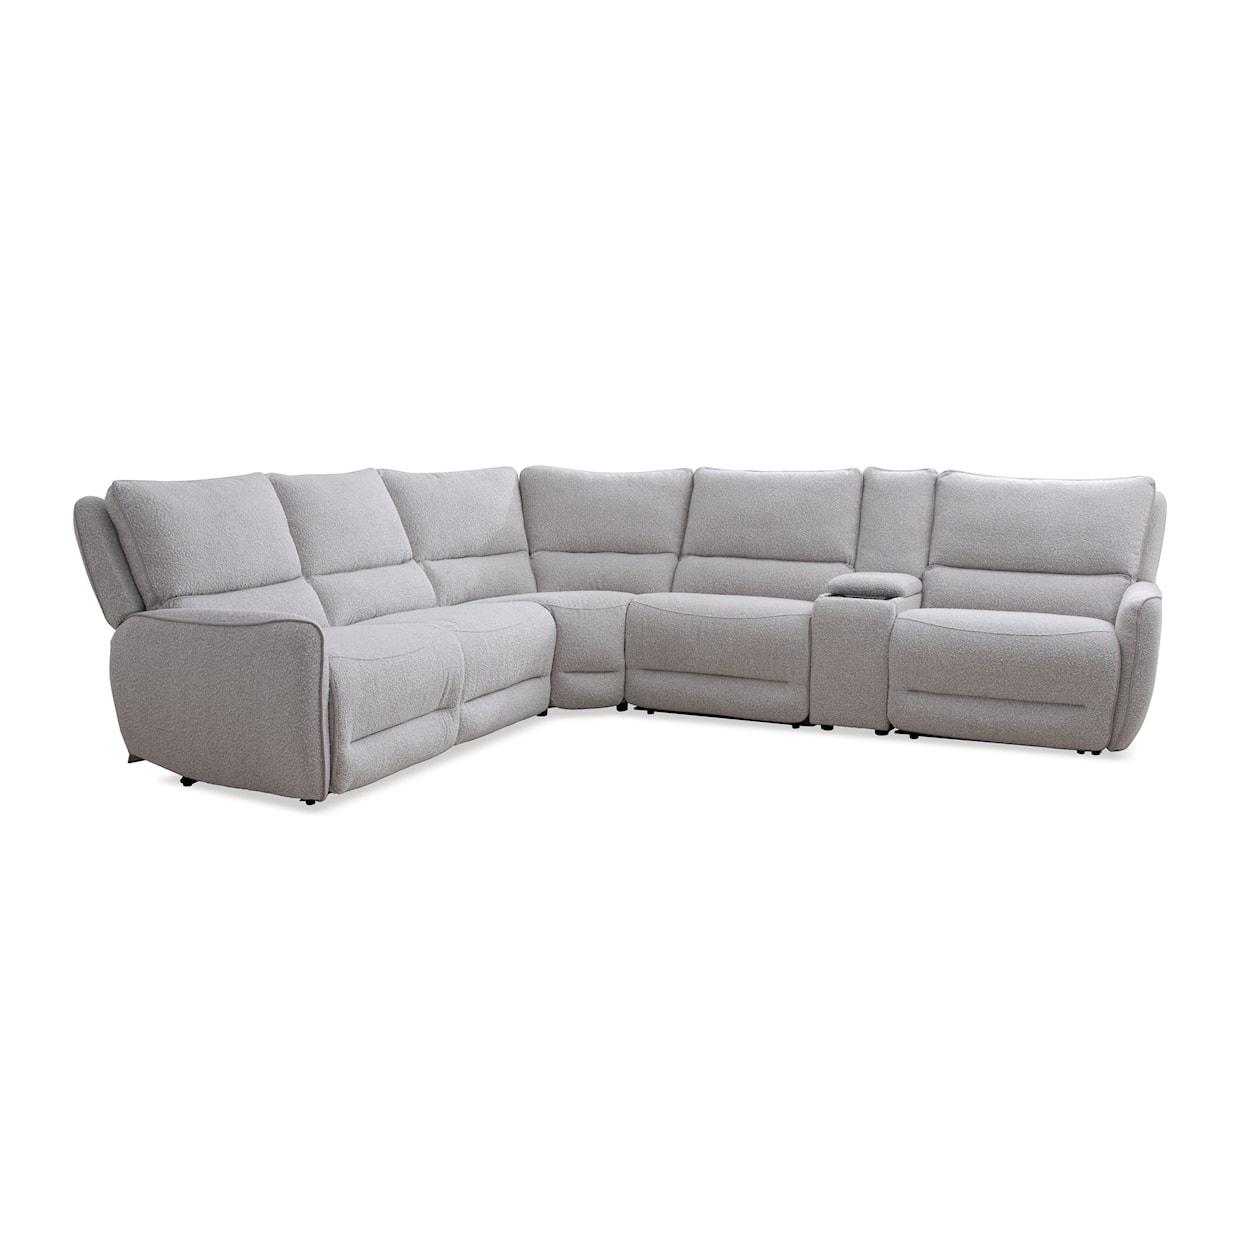 Paramount Living Stellar - Bloke Cotton 6-Piece Sectional Sofa